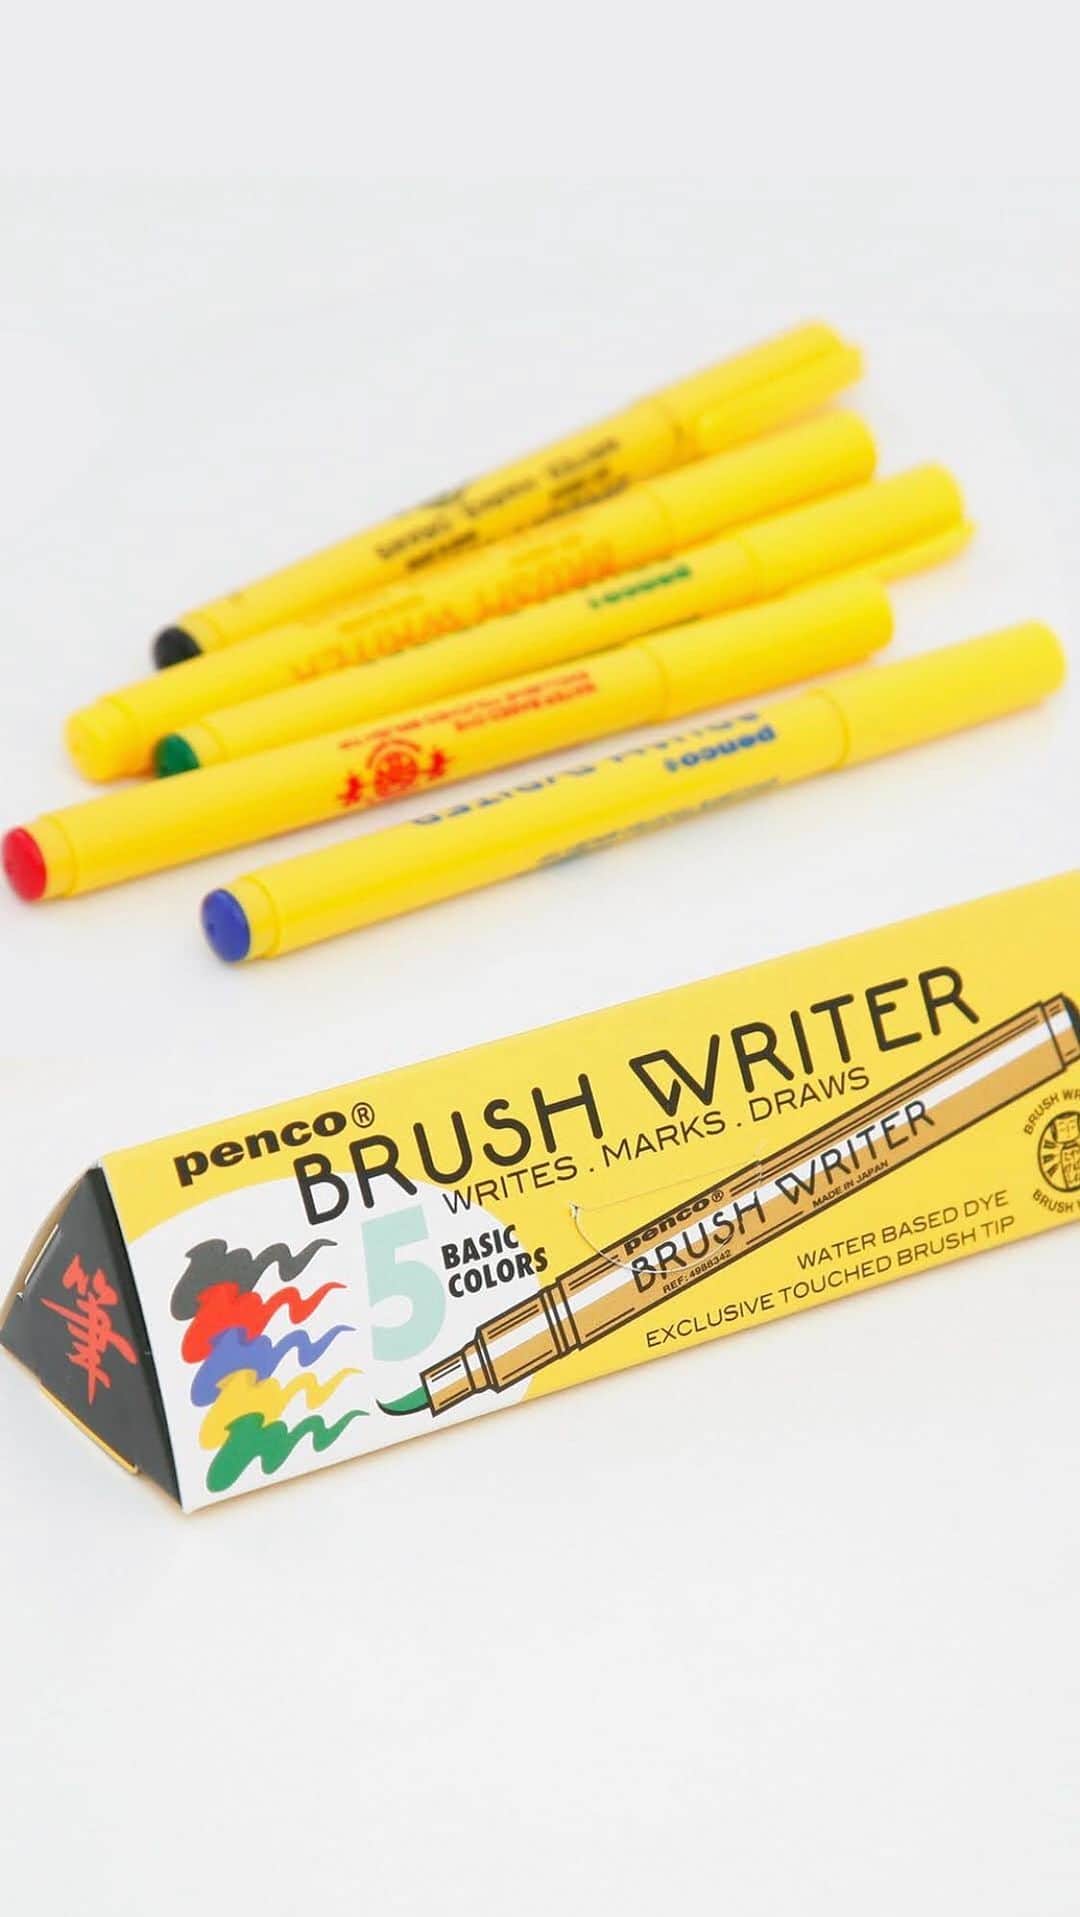 HIGHTIDE/ハイタイドのインスタグラム：「国内の老舗筆メーカーと共に作った〈penco〉の「ブラシライター」。 日本製ならではの書き心地はそのままに、ポップなデザインに仕上げました。  毛筆タイプのカラーペンのため、細い線から太い線まで1本で描き分けが可能。 人気のカリグラフィーやアートもお楽しみ頂けます。  軟筆タイプ、ブラック、レッド、イエロー、ブルー、グリーンの5色展開。 箱入りの5色セットや蛍光色タイプもご用意しています。  @penco_jpn @hightide_japan  #hightide #penco #brushwriter #pen #pens #colorpen #calligraphy #art #pentest #ハイタイド #ペンコ #ブラシライター #筆ペン #カラーペン #ペン #カリグラフィー #筆記具 #文具 #文房具」